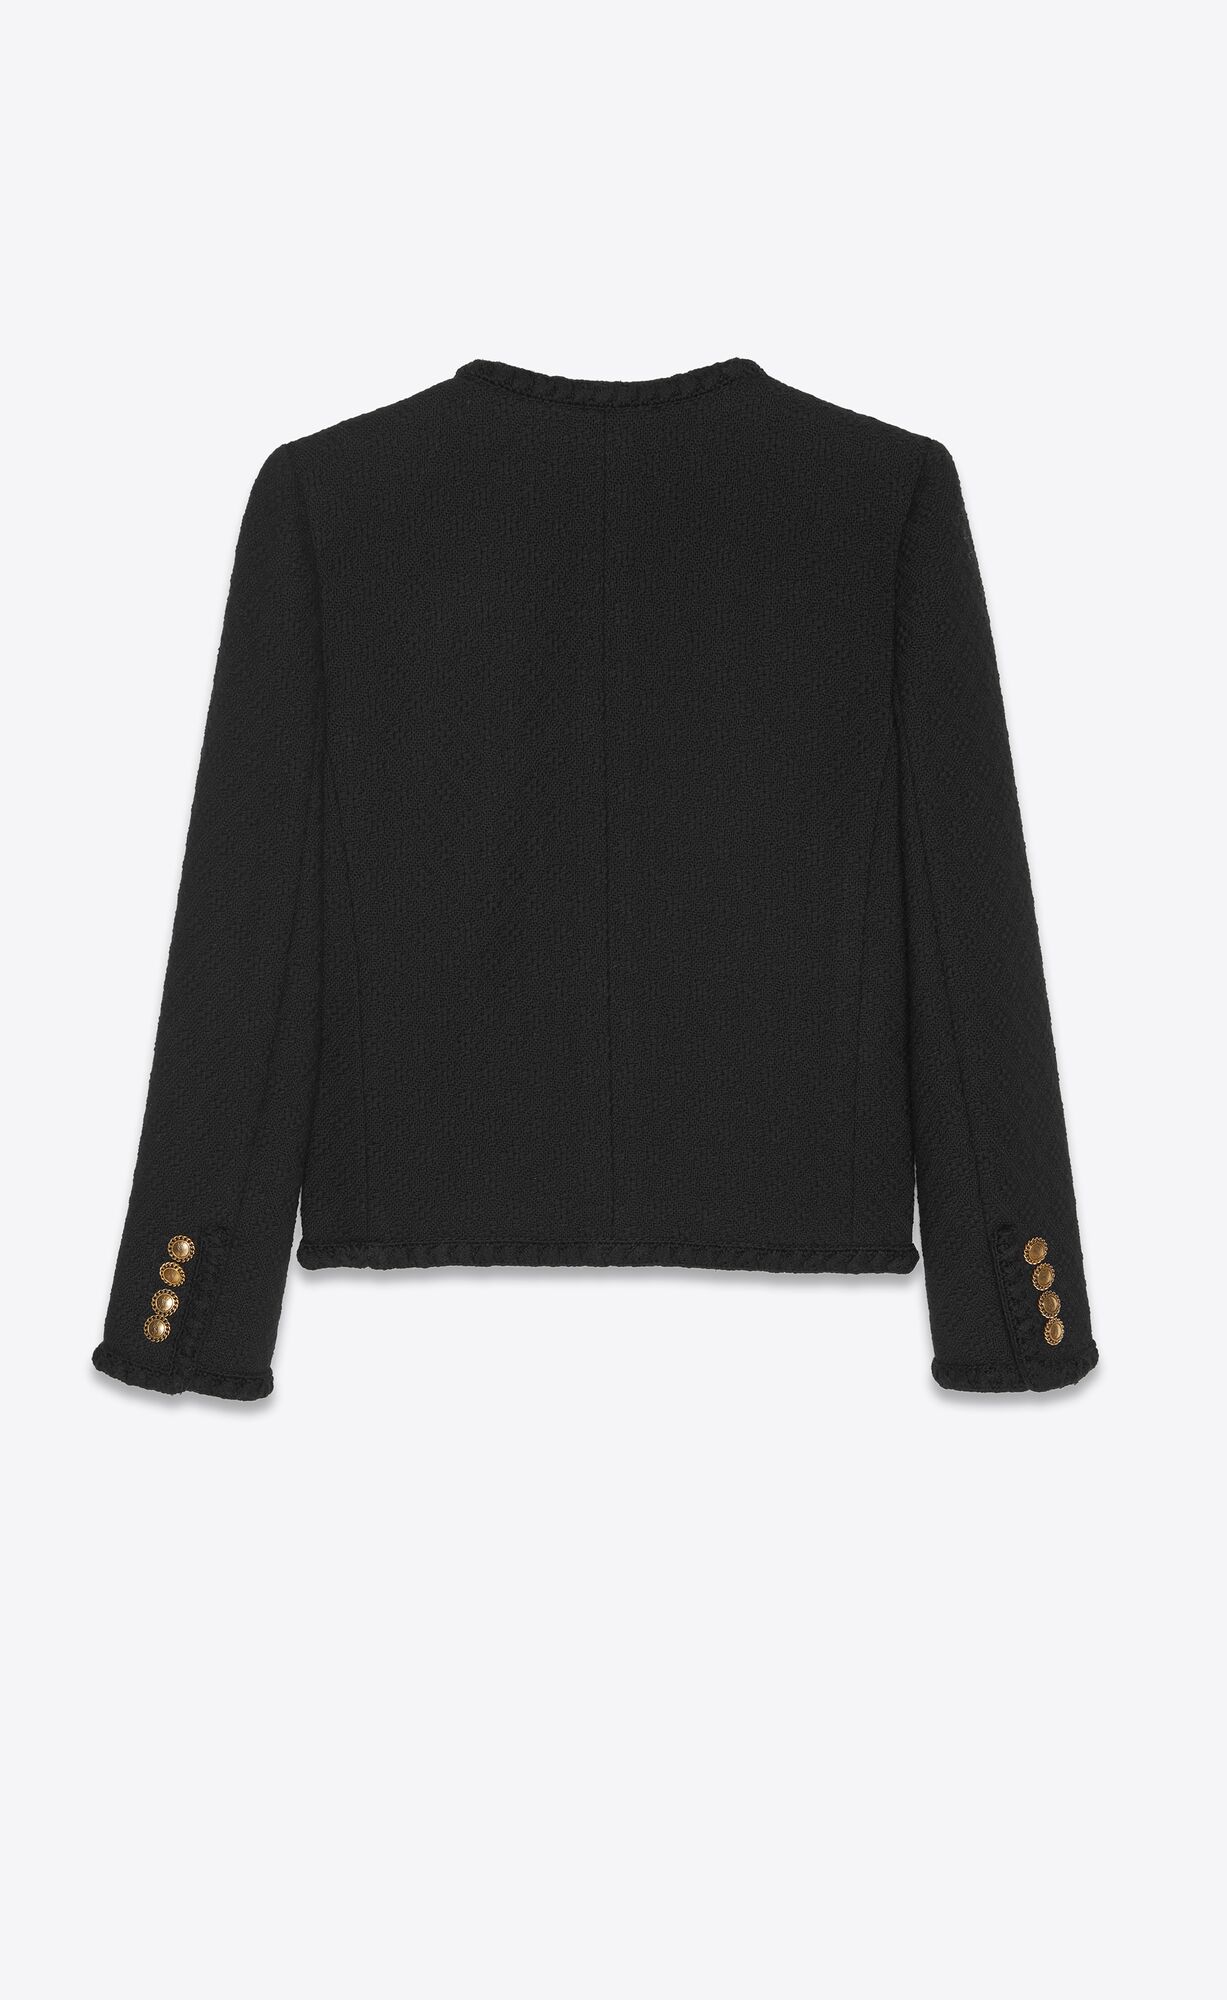 16 Tweed Jackets to Wear Fall 2023